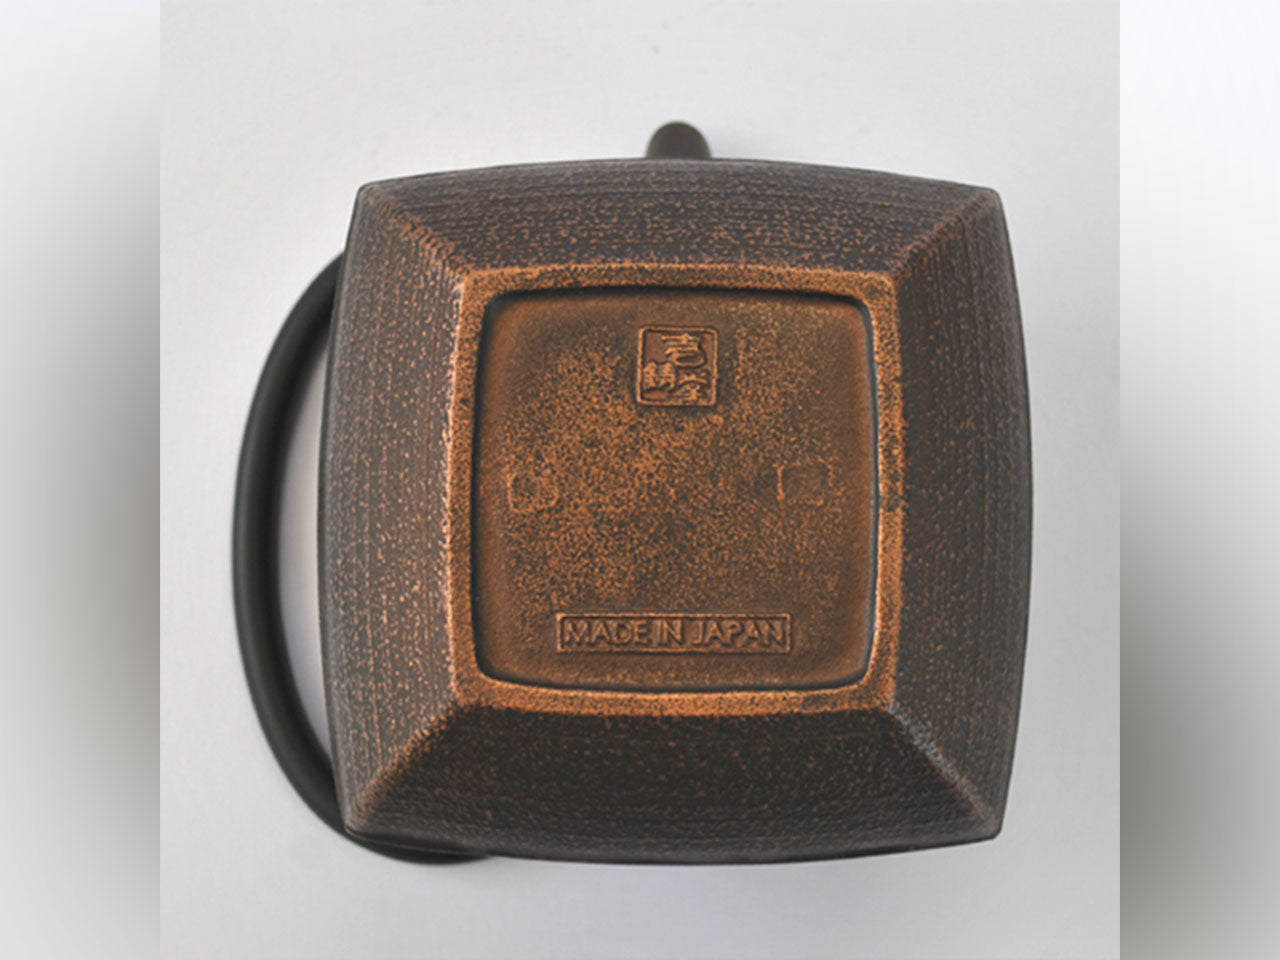 茶具 茶壺 石庭 0.8L 銅黑 南部鐵器 金屬工藝品